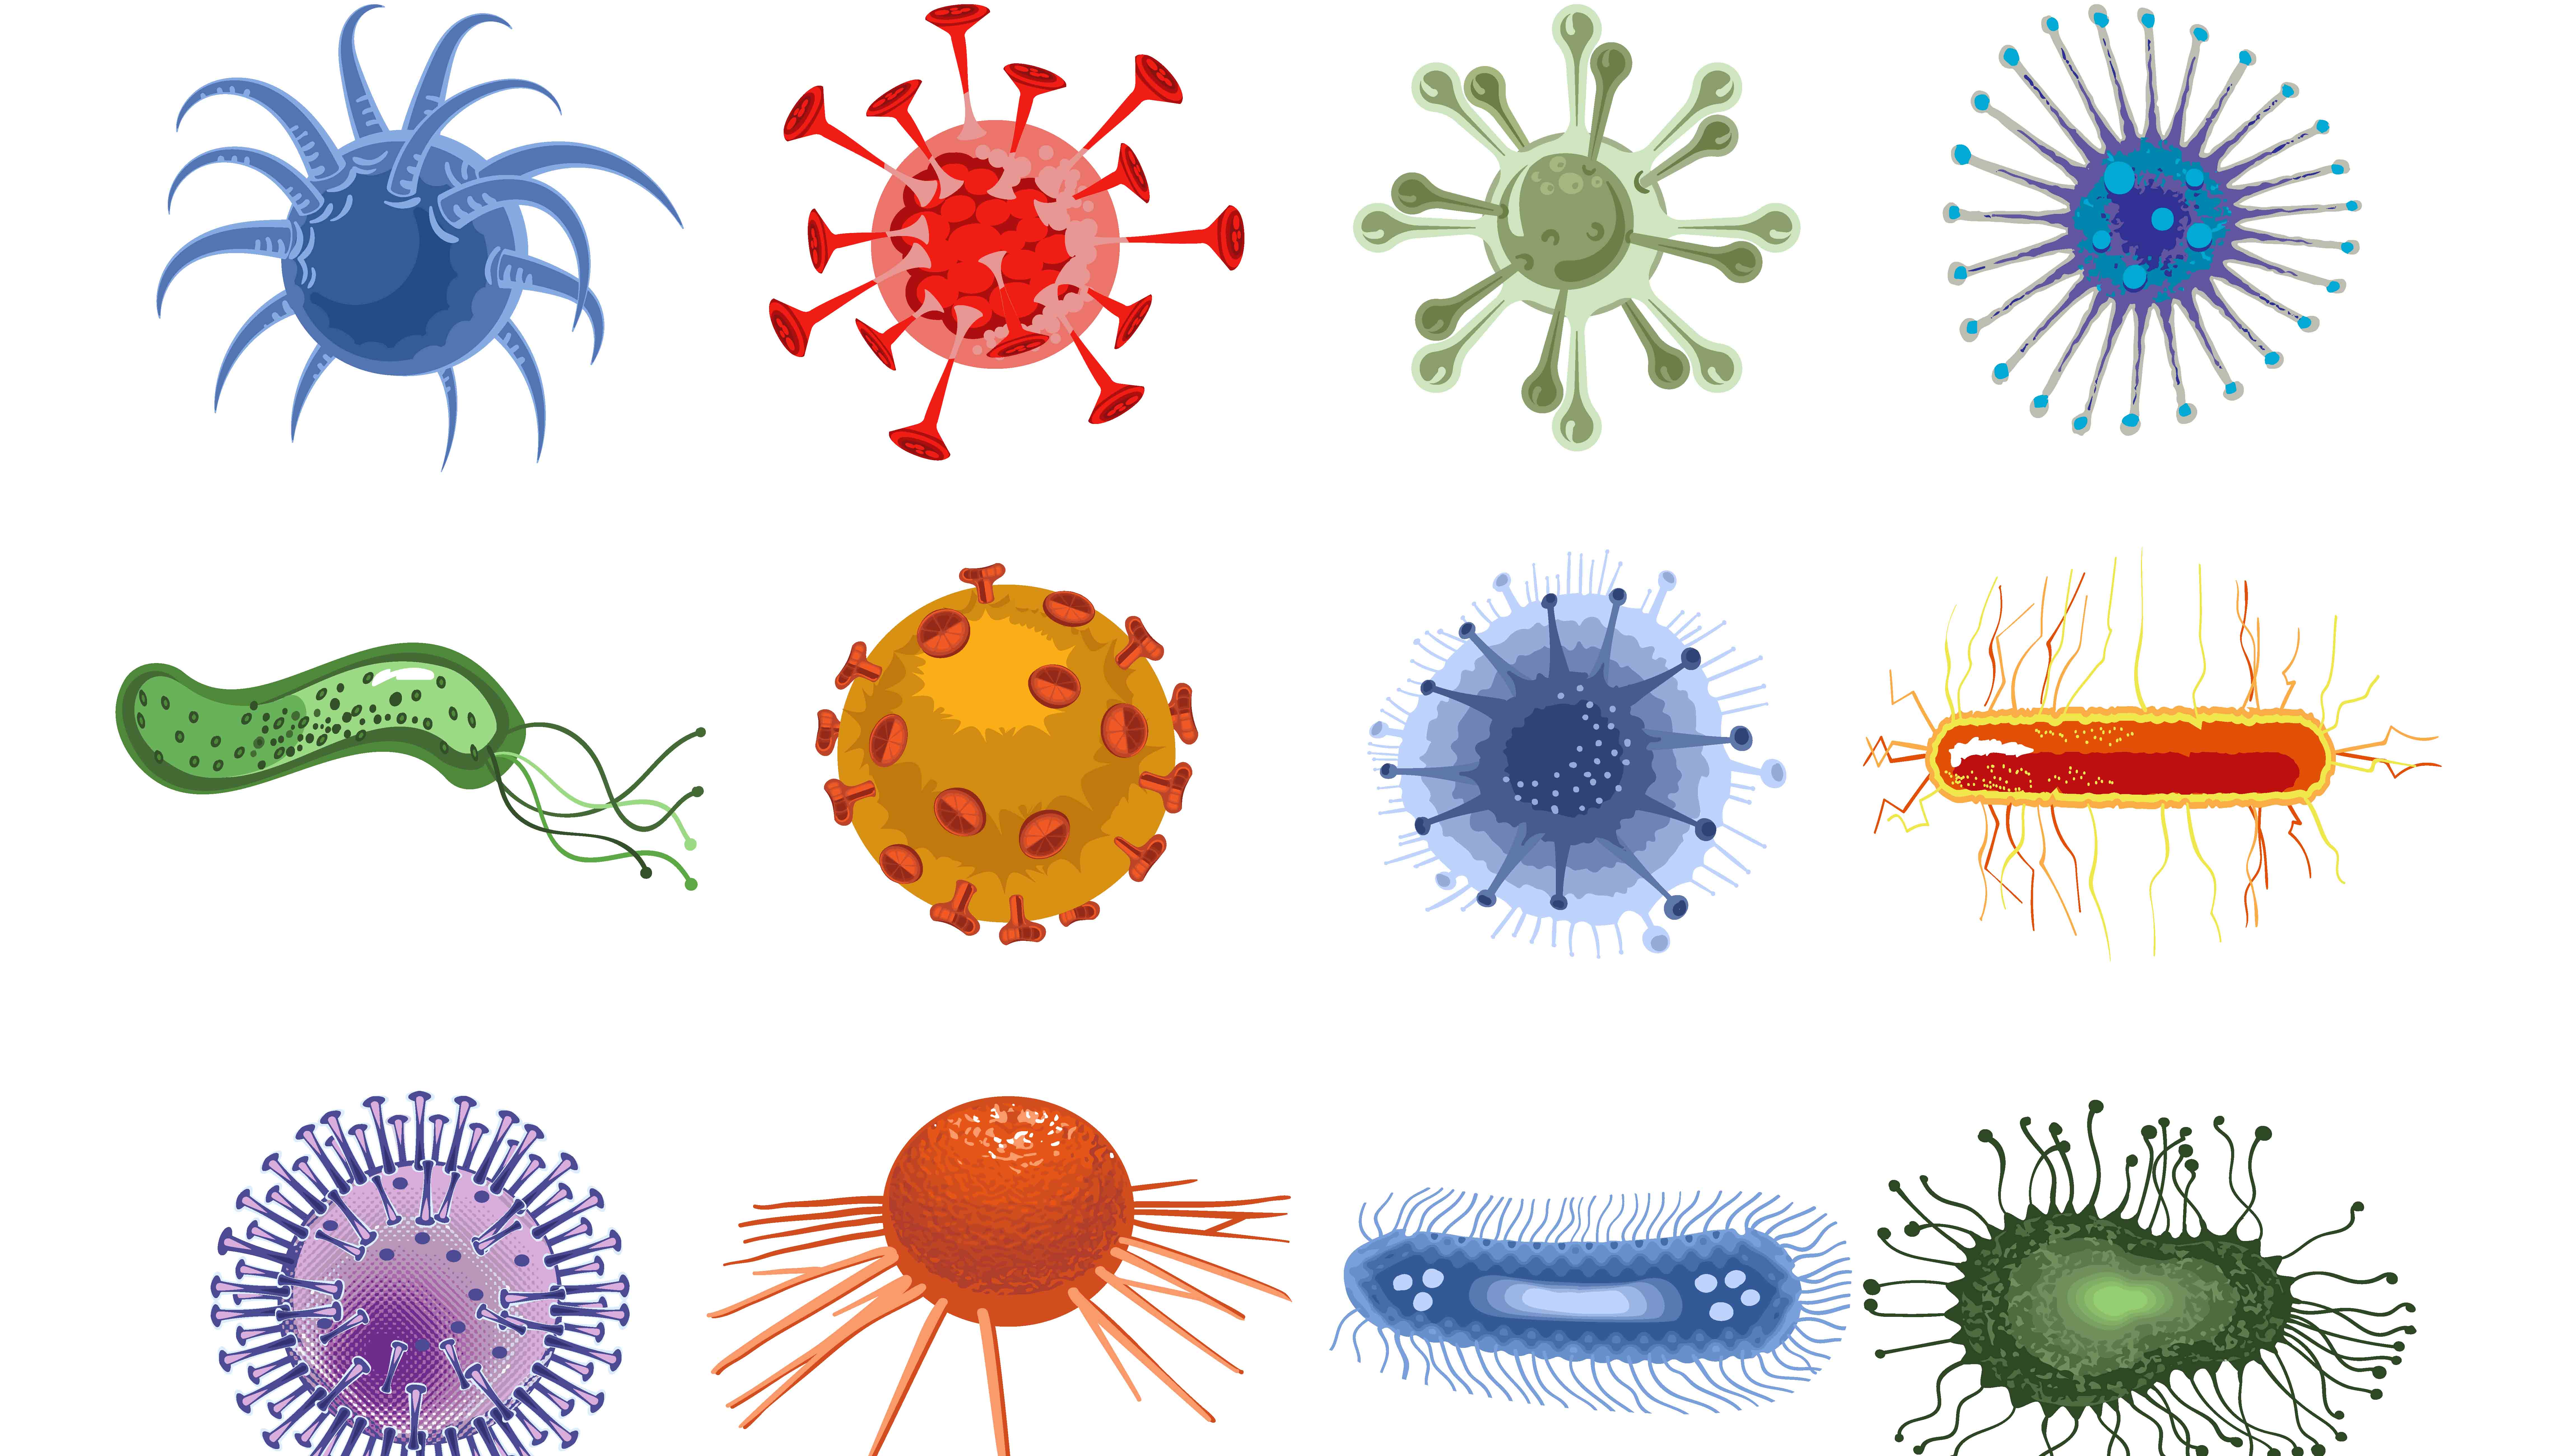 Como Os Vírus E As Bactérias Agem No Organismo - AskSchool